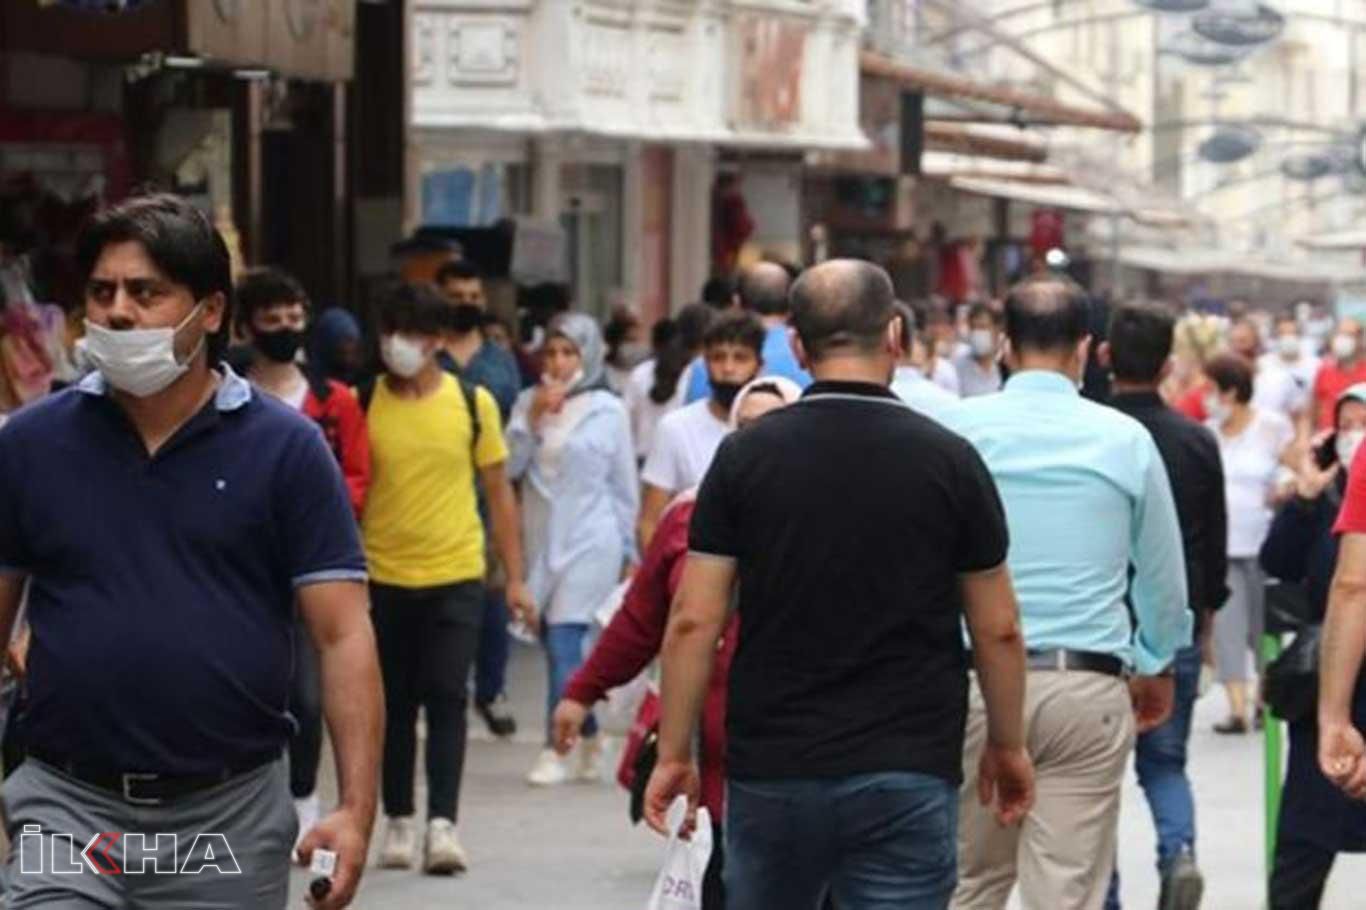 Gaziantep'te 3 bin 303 kişiye sosyal mesafe ve maske cezası verildi